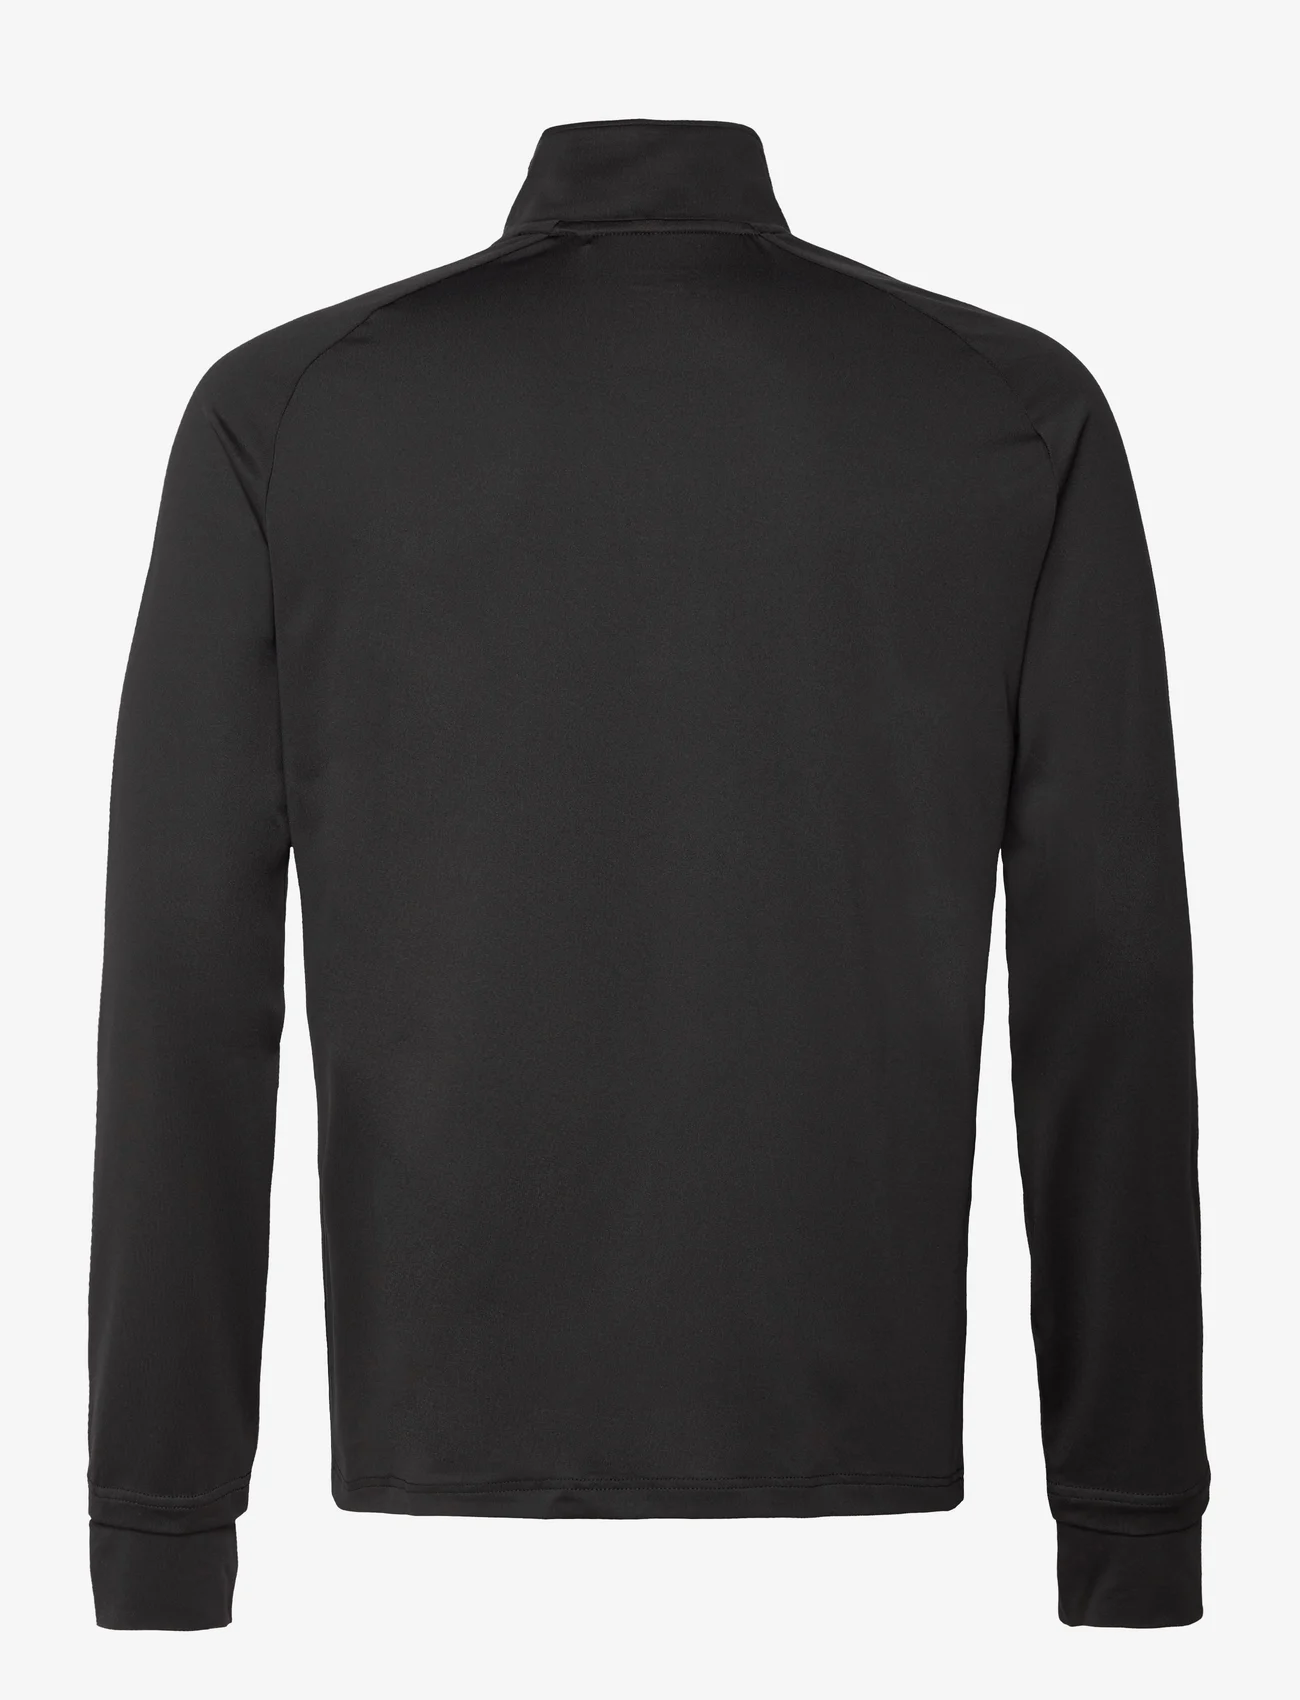 RS Sports - Men’s Half Zip Sweater - kläder - black - 1